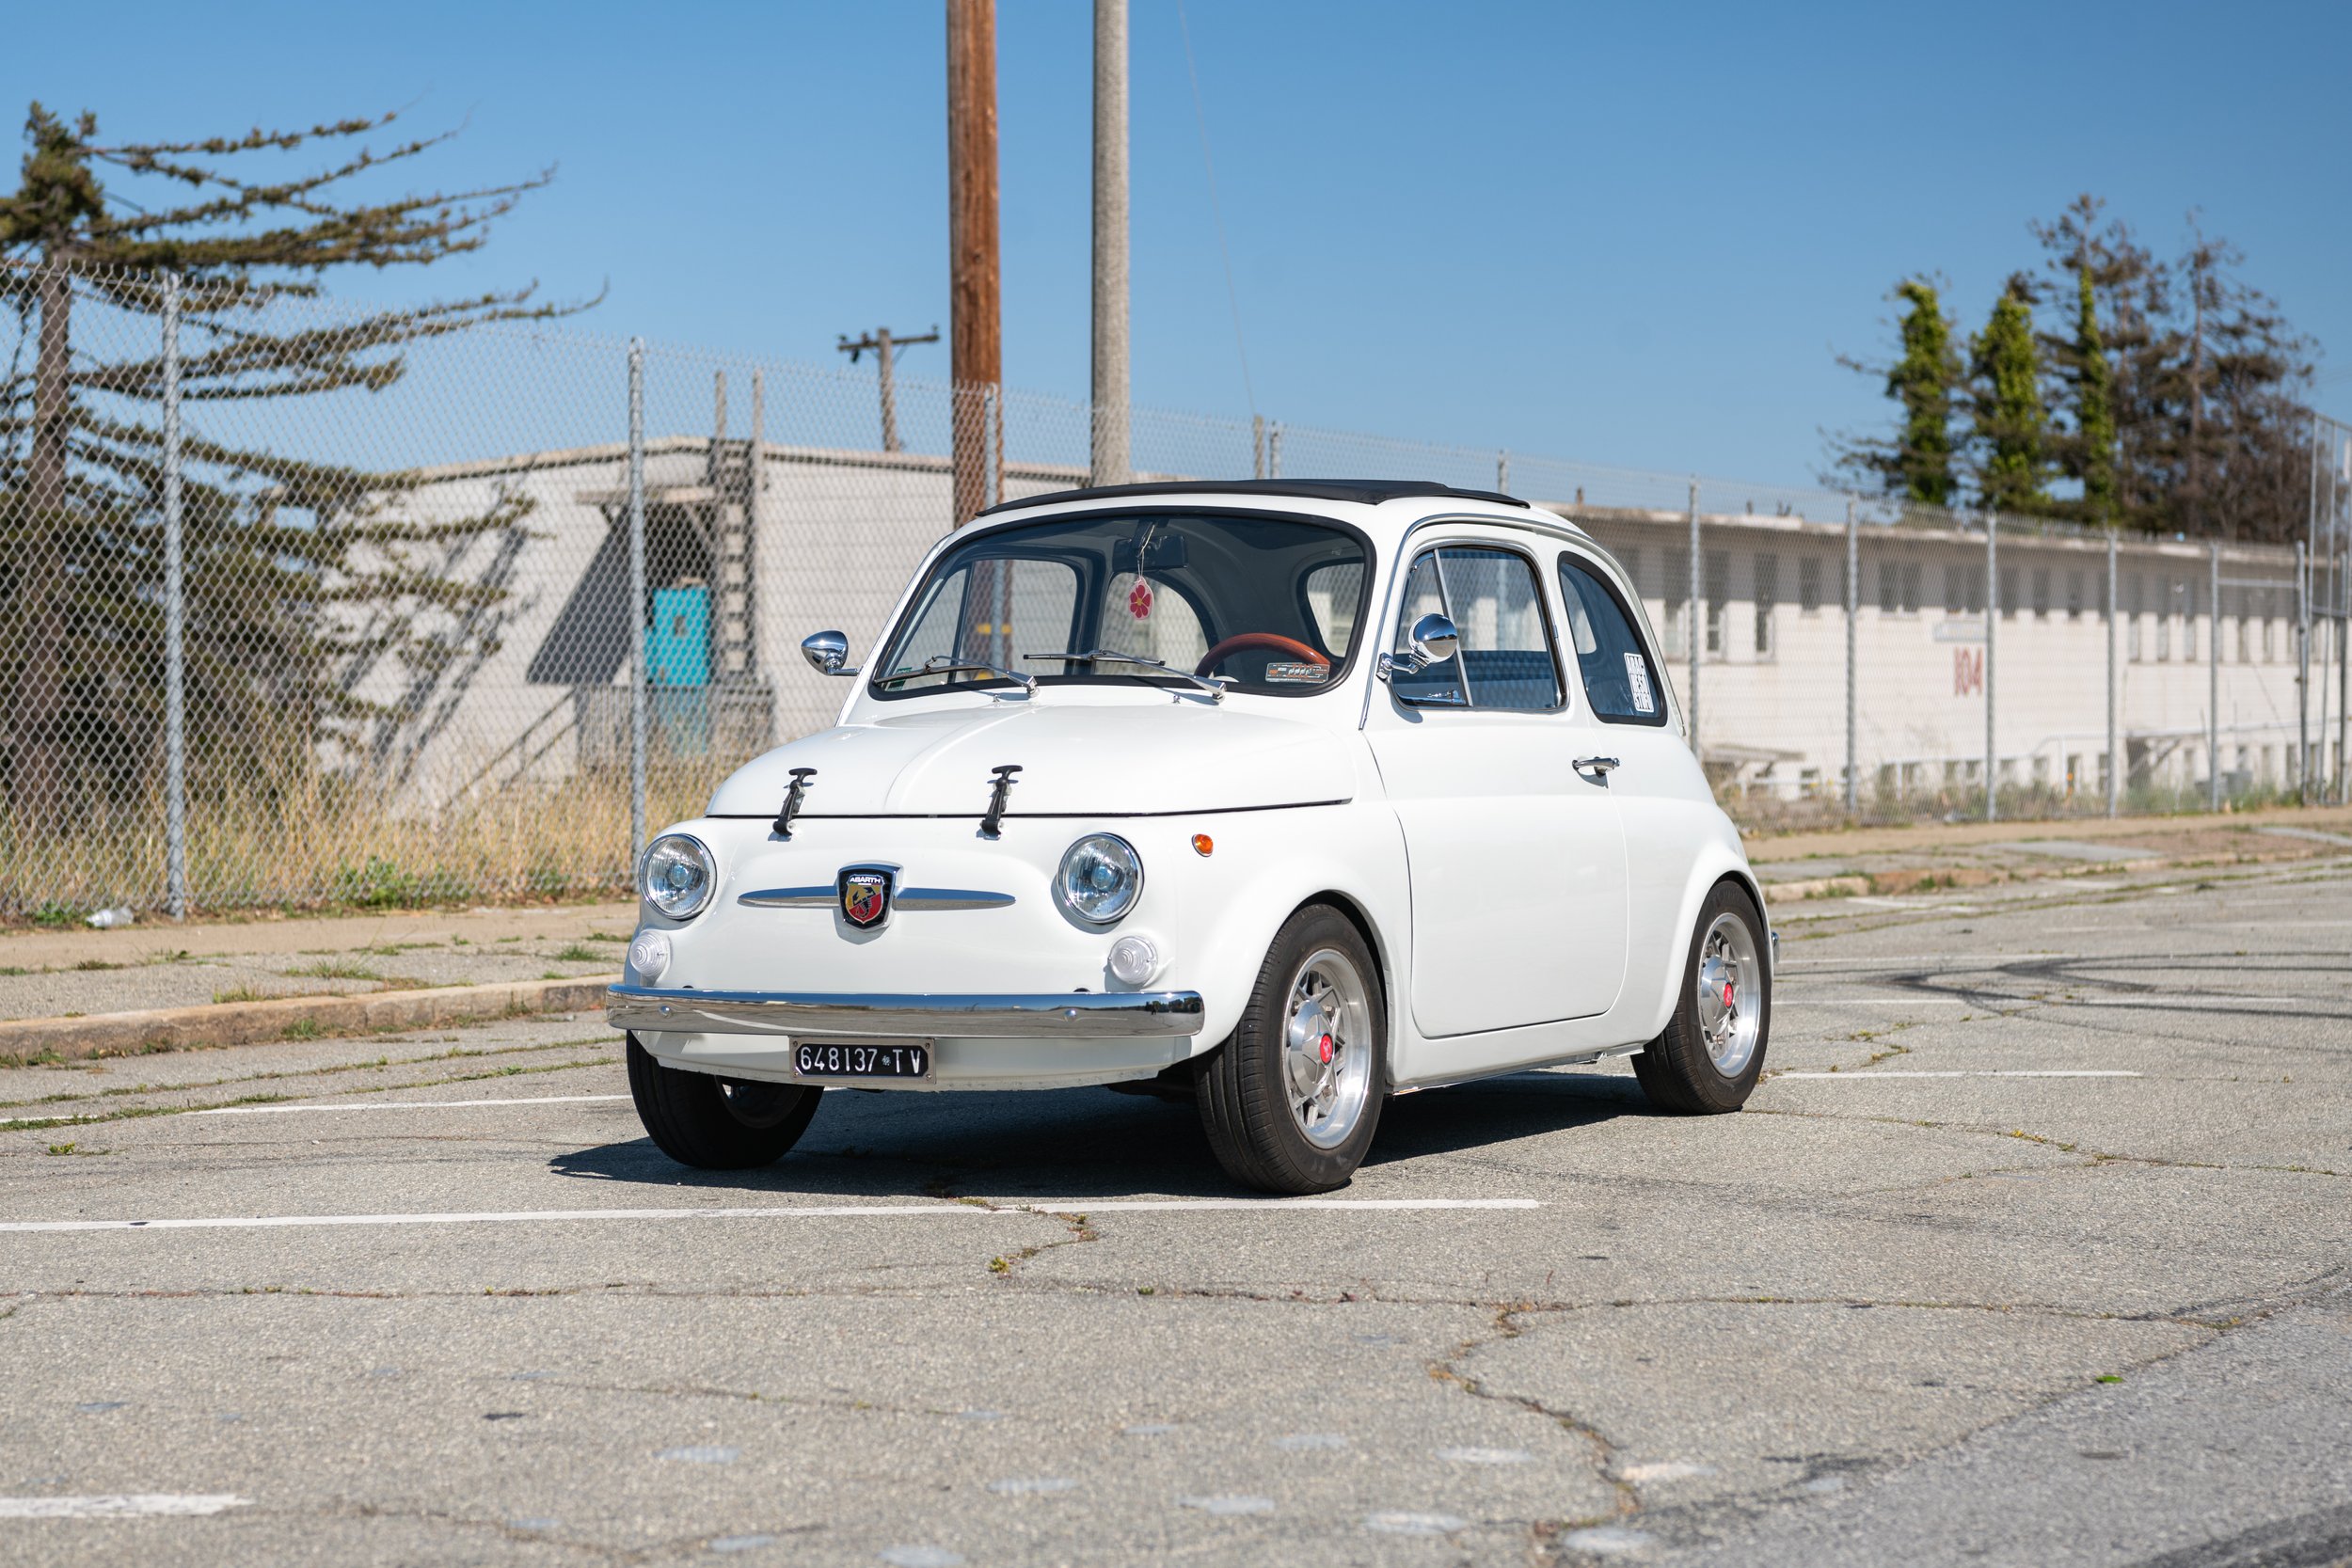 Bello Moto_1965 Fiat 500 - WHITE - (D234)_Sharplite_FULL RES-61.jpg